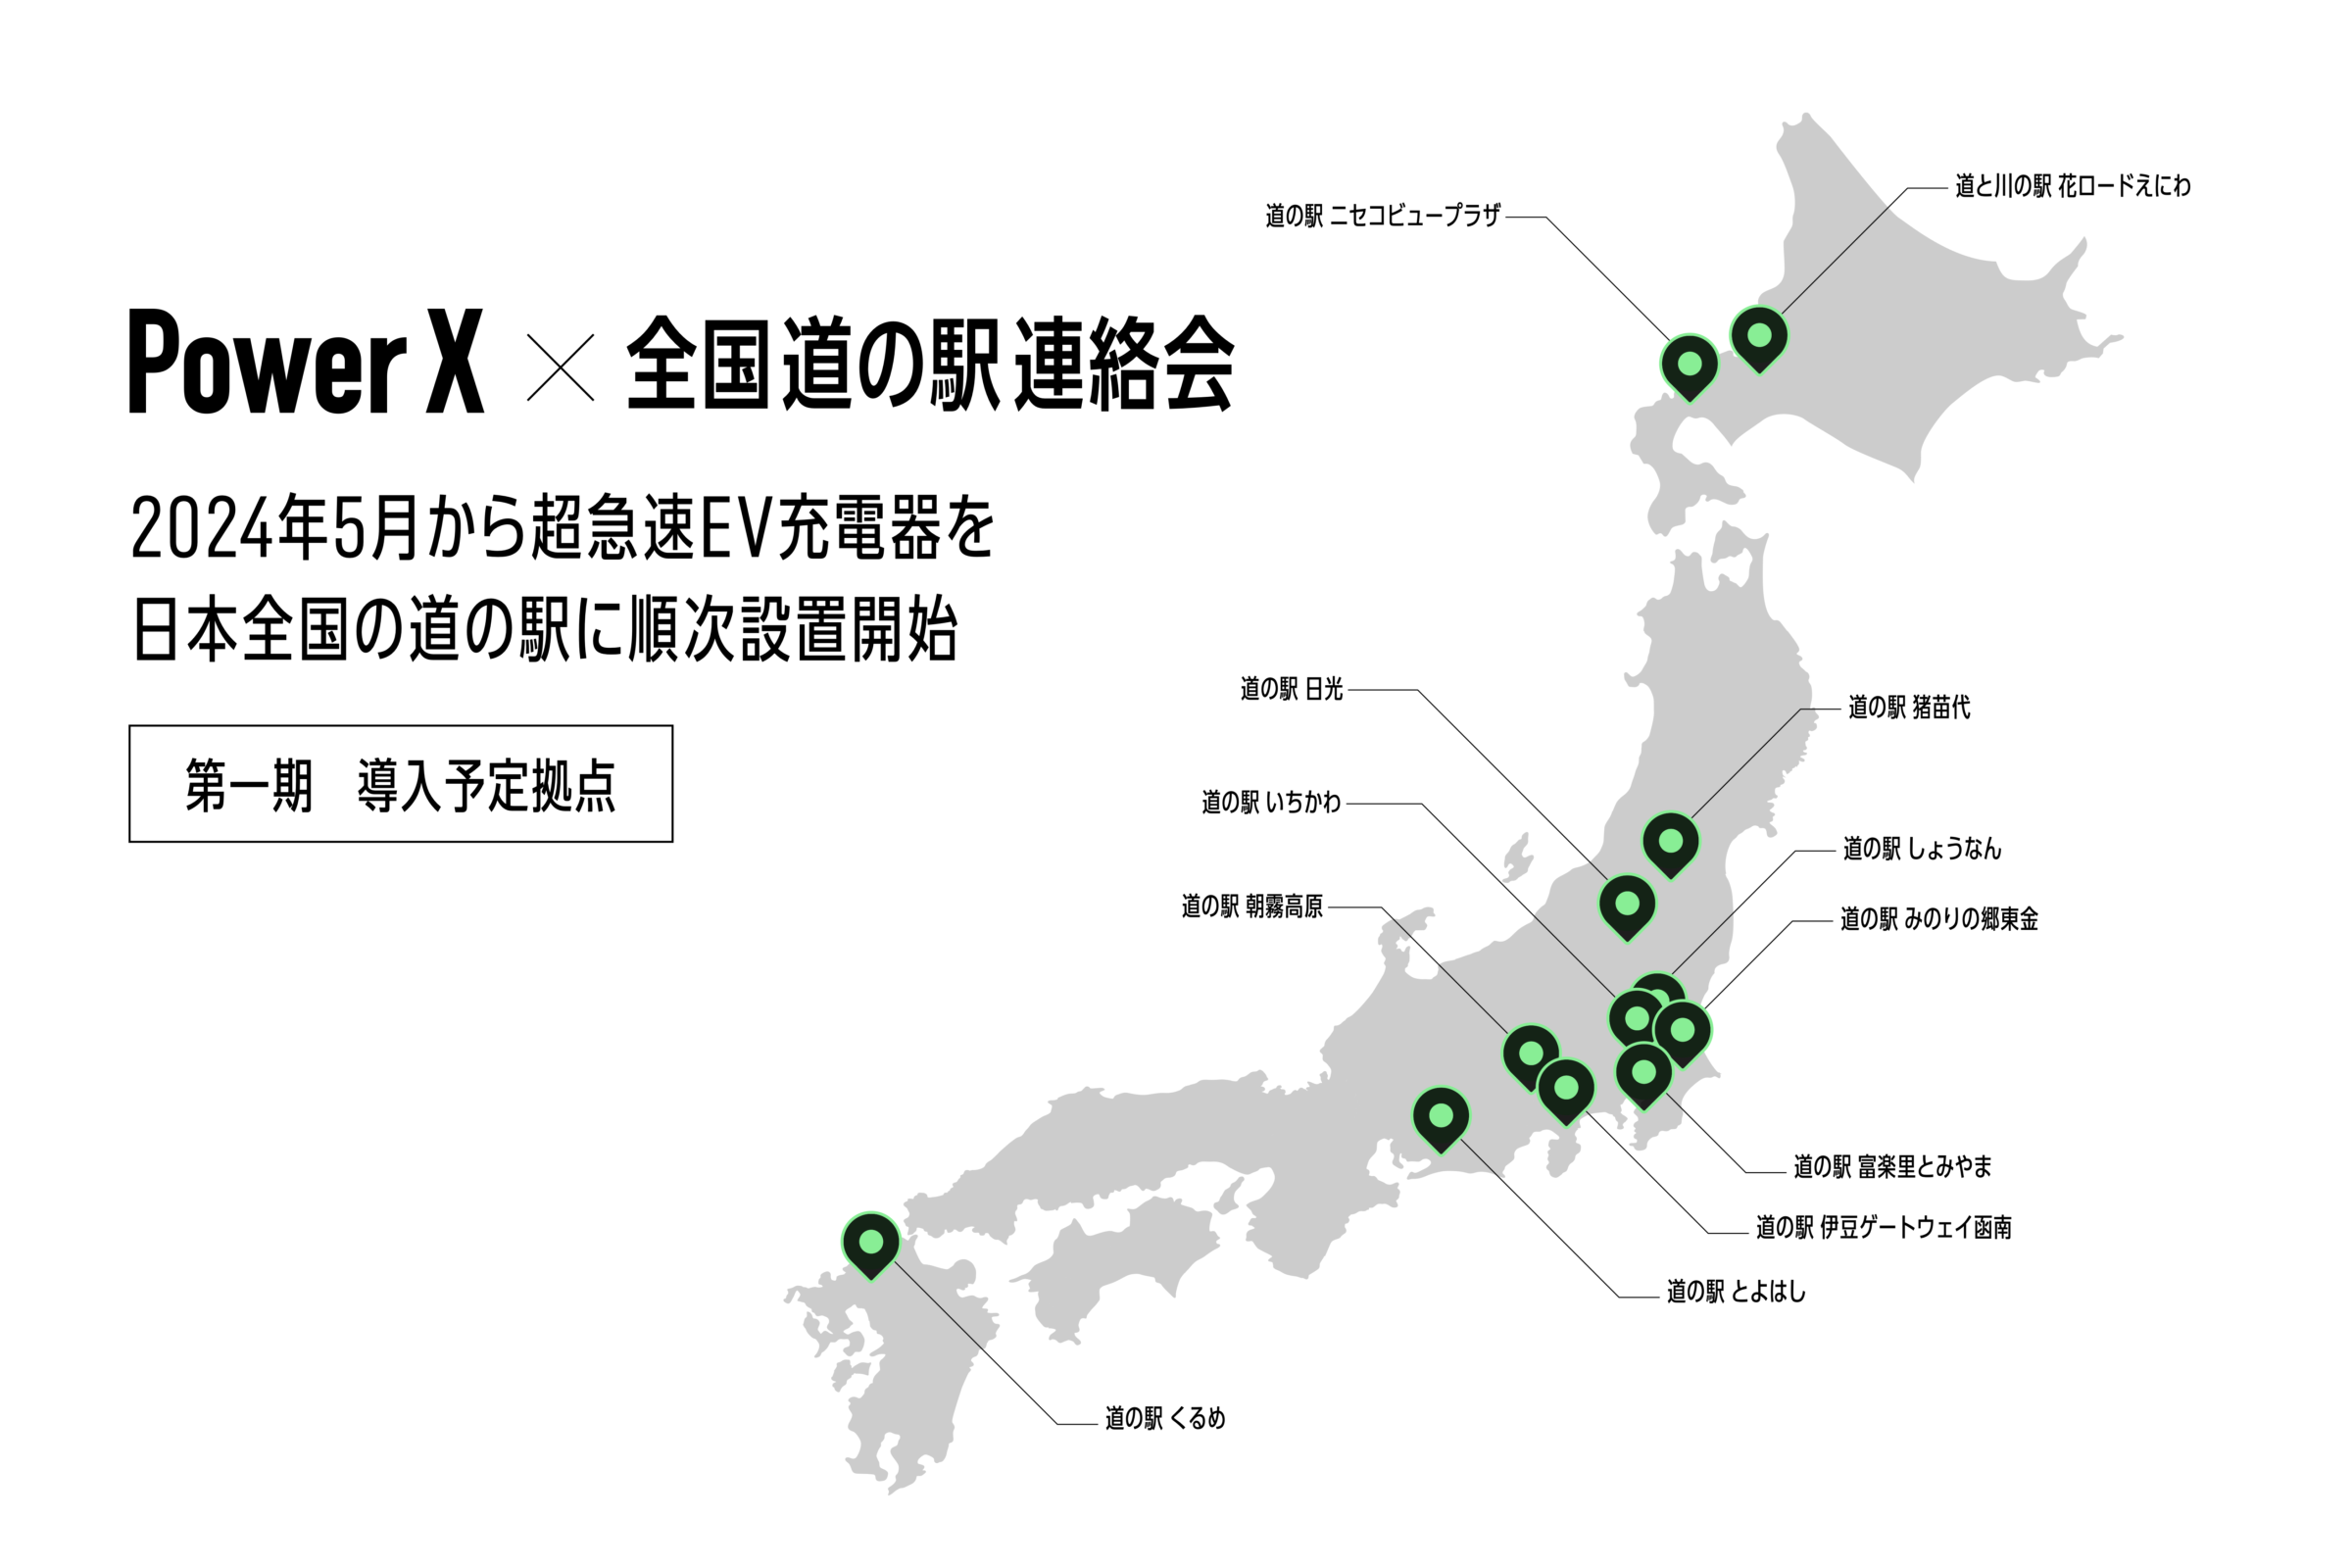 240409 michinoeki-MAP web